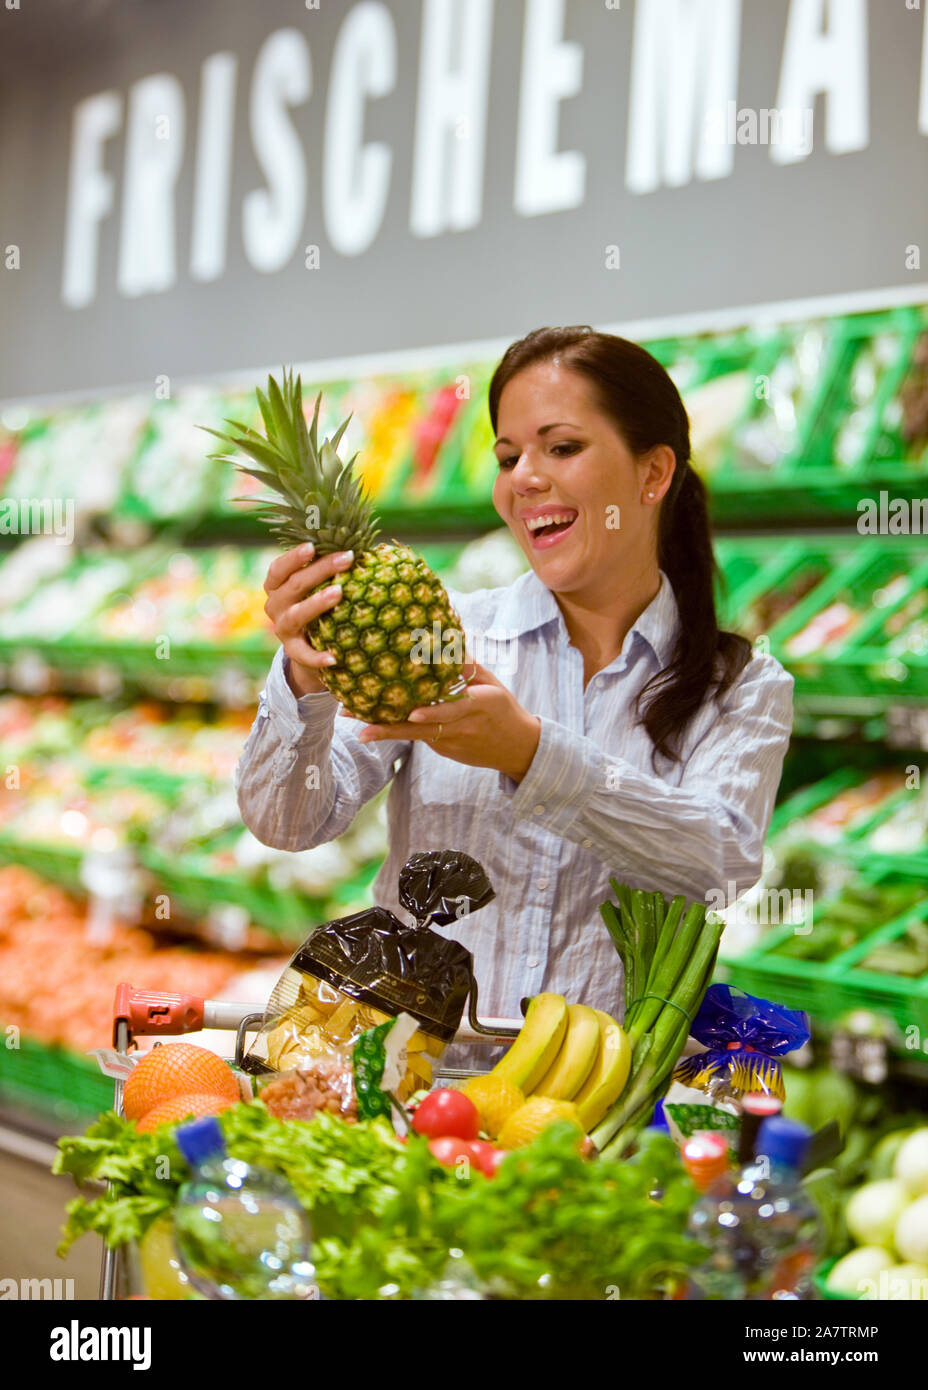 Frau geht Einkaufen im Supermarkt, kauft eine Ananas, Einkaufswagen mit, Obst und Gemüse Lebensmittel, signor: Sì Foto Stock